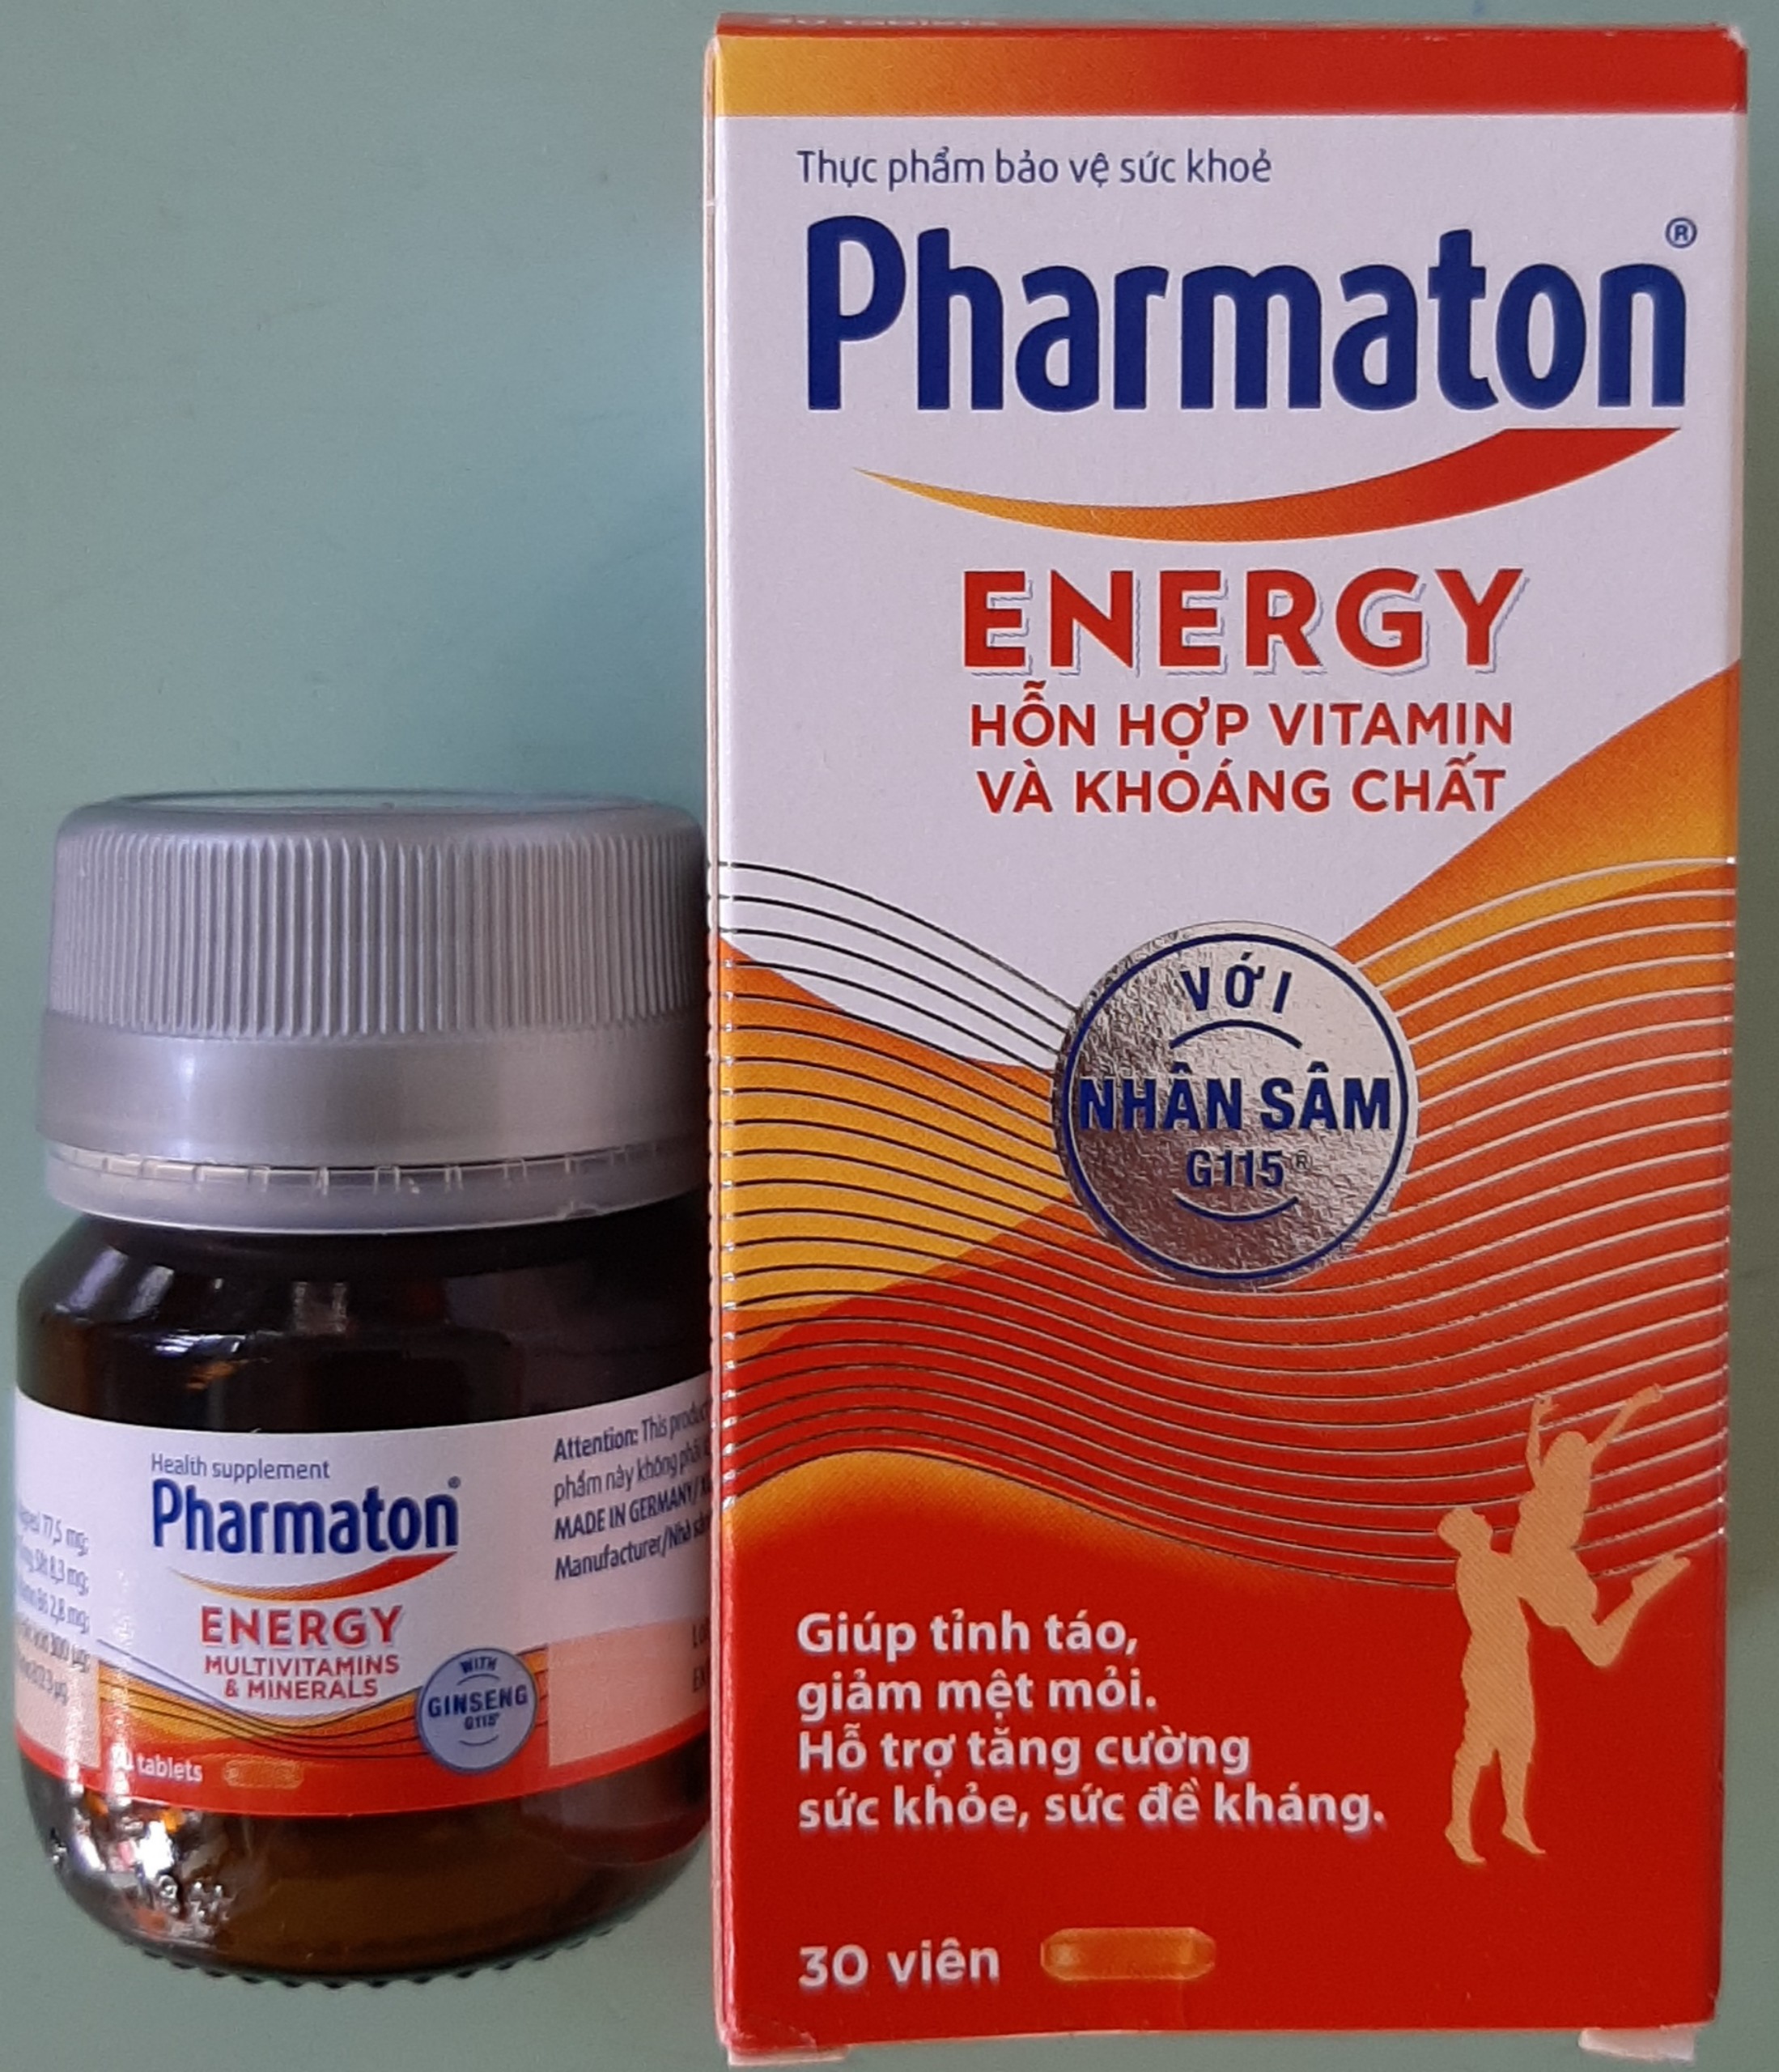 Pharmaton Energy, Vitamin và khoáng chất, giúp tăng cường sức khỏe